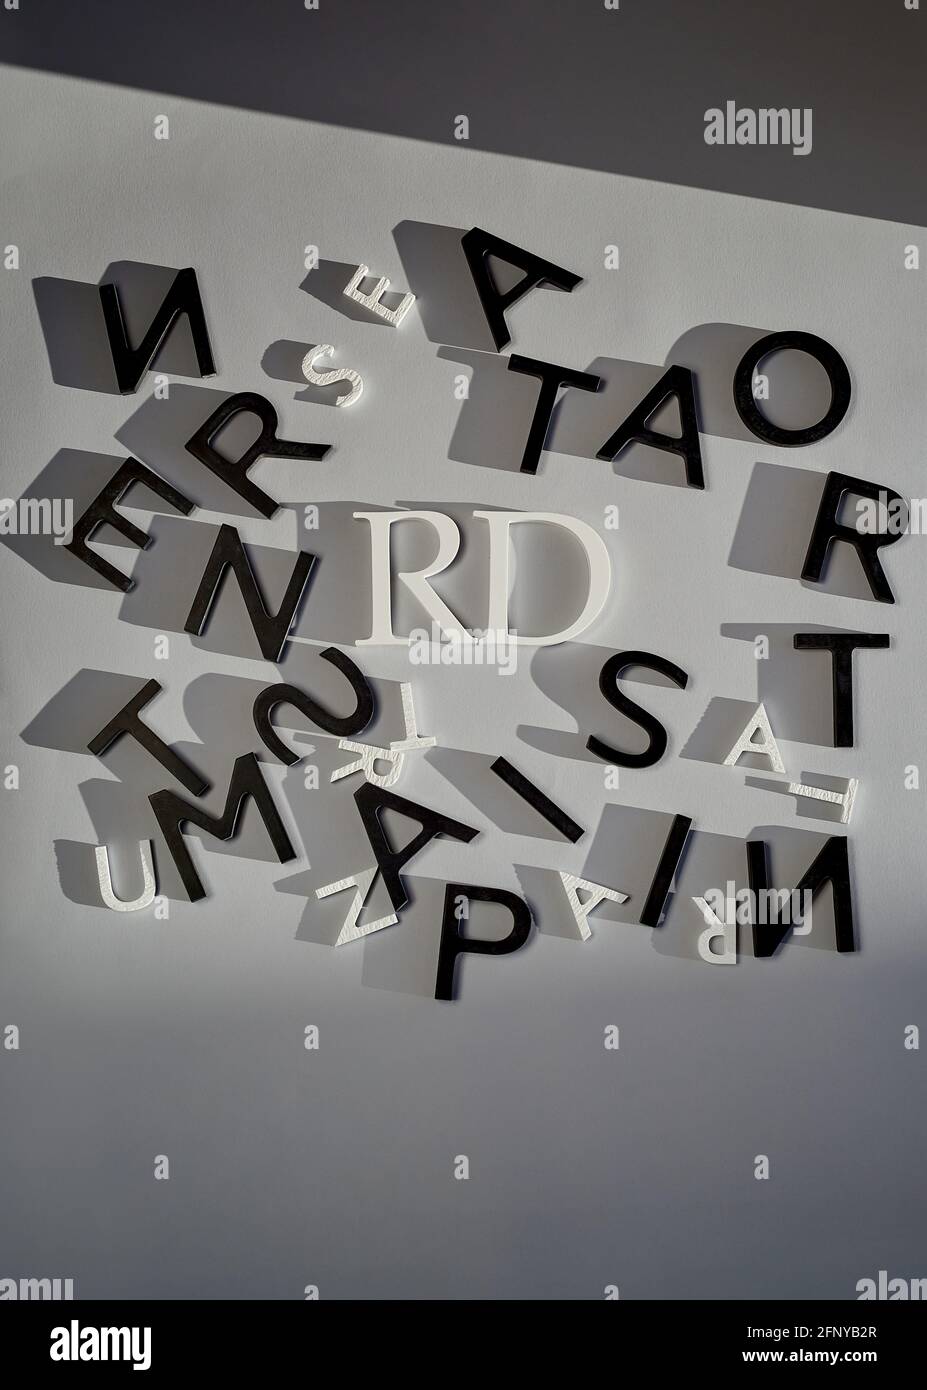 Raccolta di lettere in bianco e nero su sfondo grigio Foto Stock